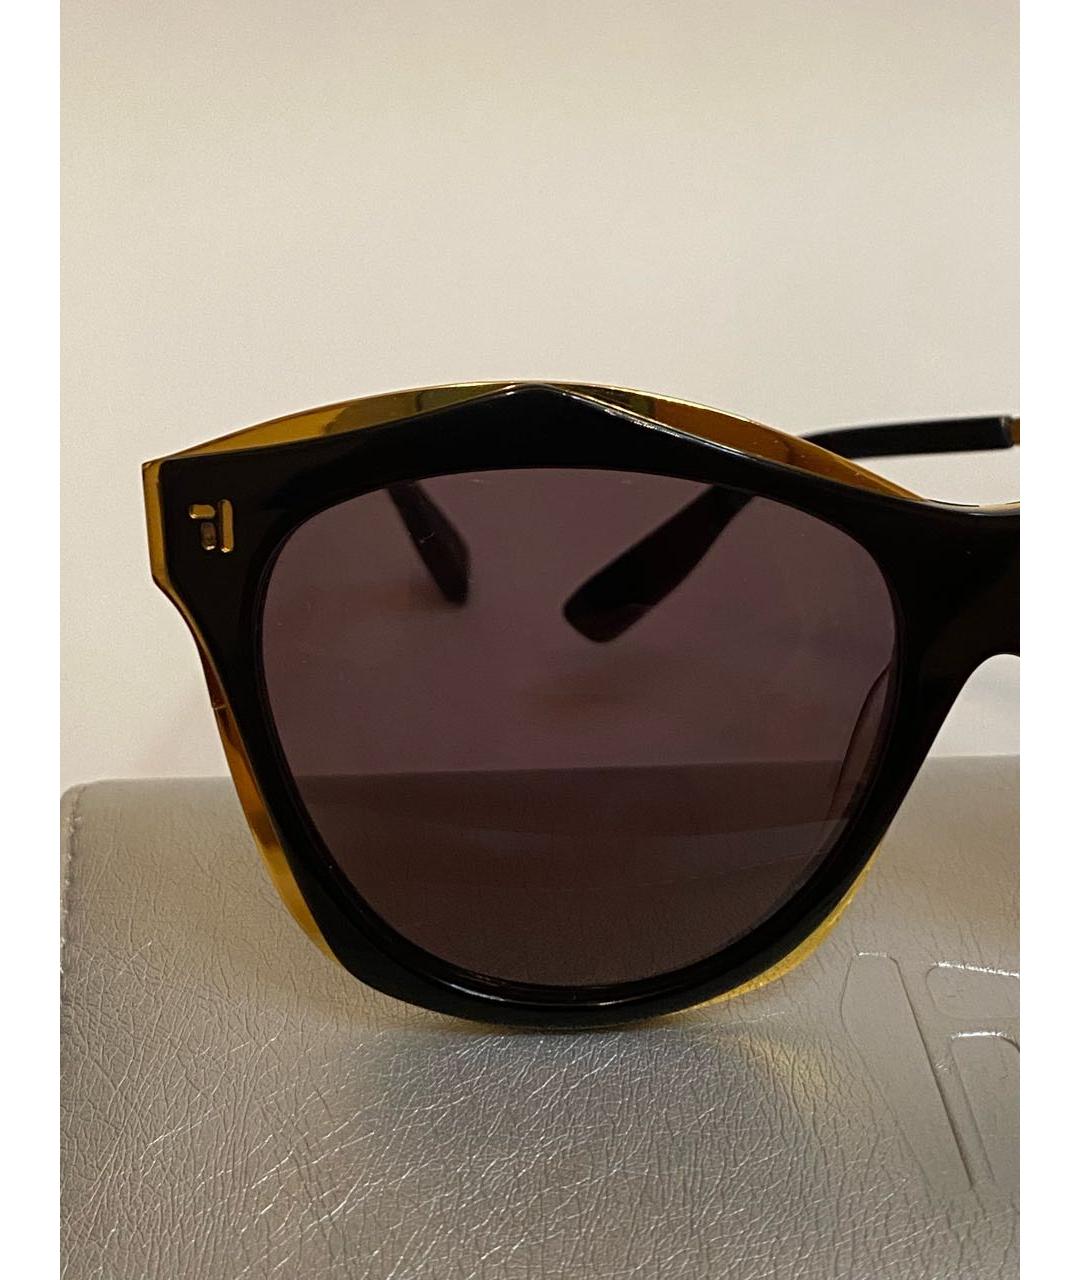 IRRESISTOR Черные пластиковые солнцезащитные очки, фото 4